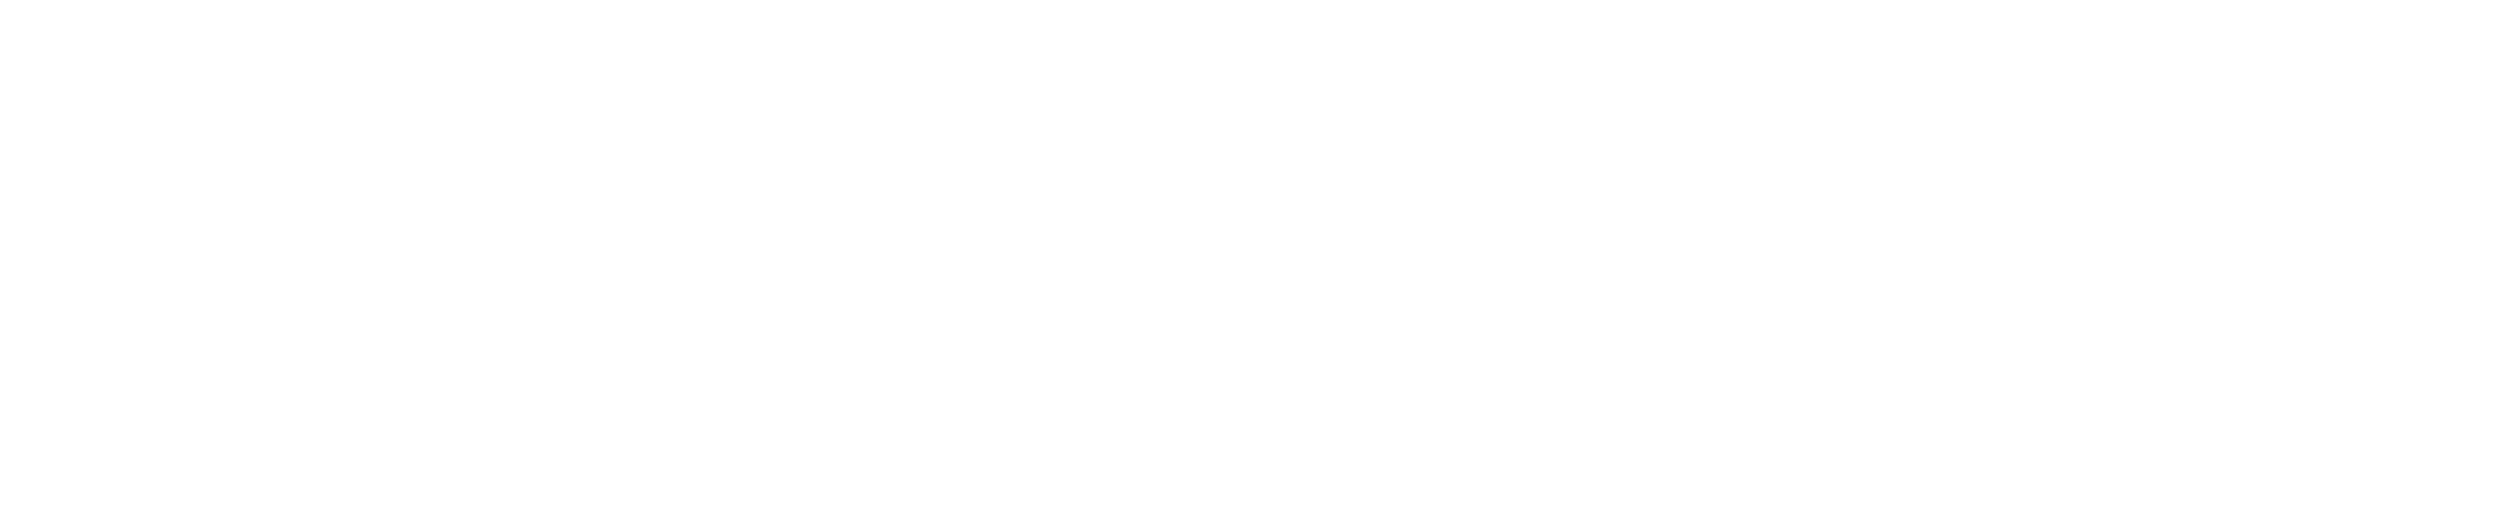 IronGrind True Fitness